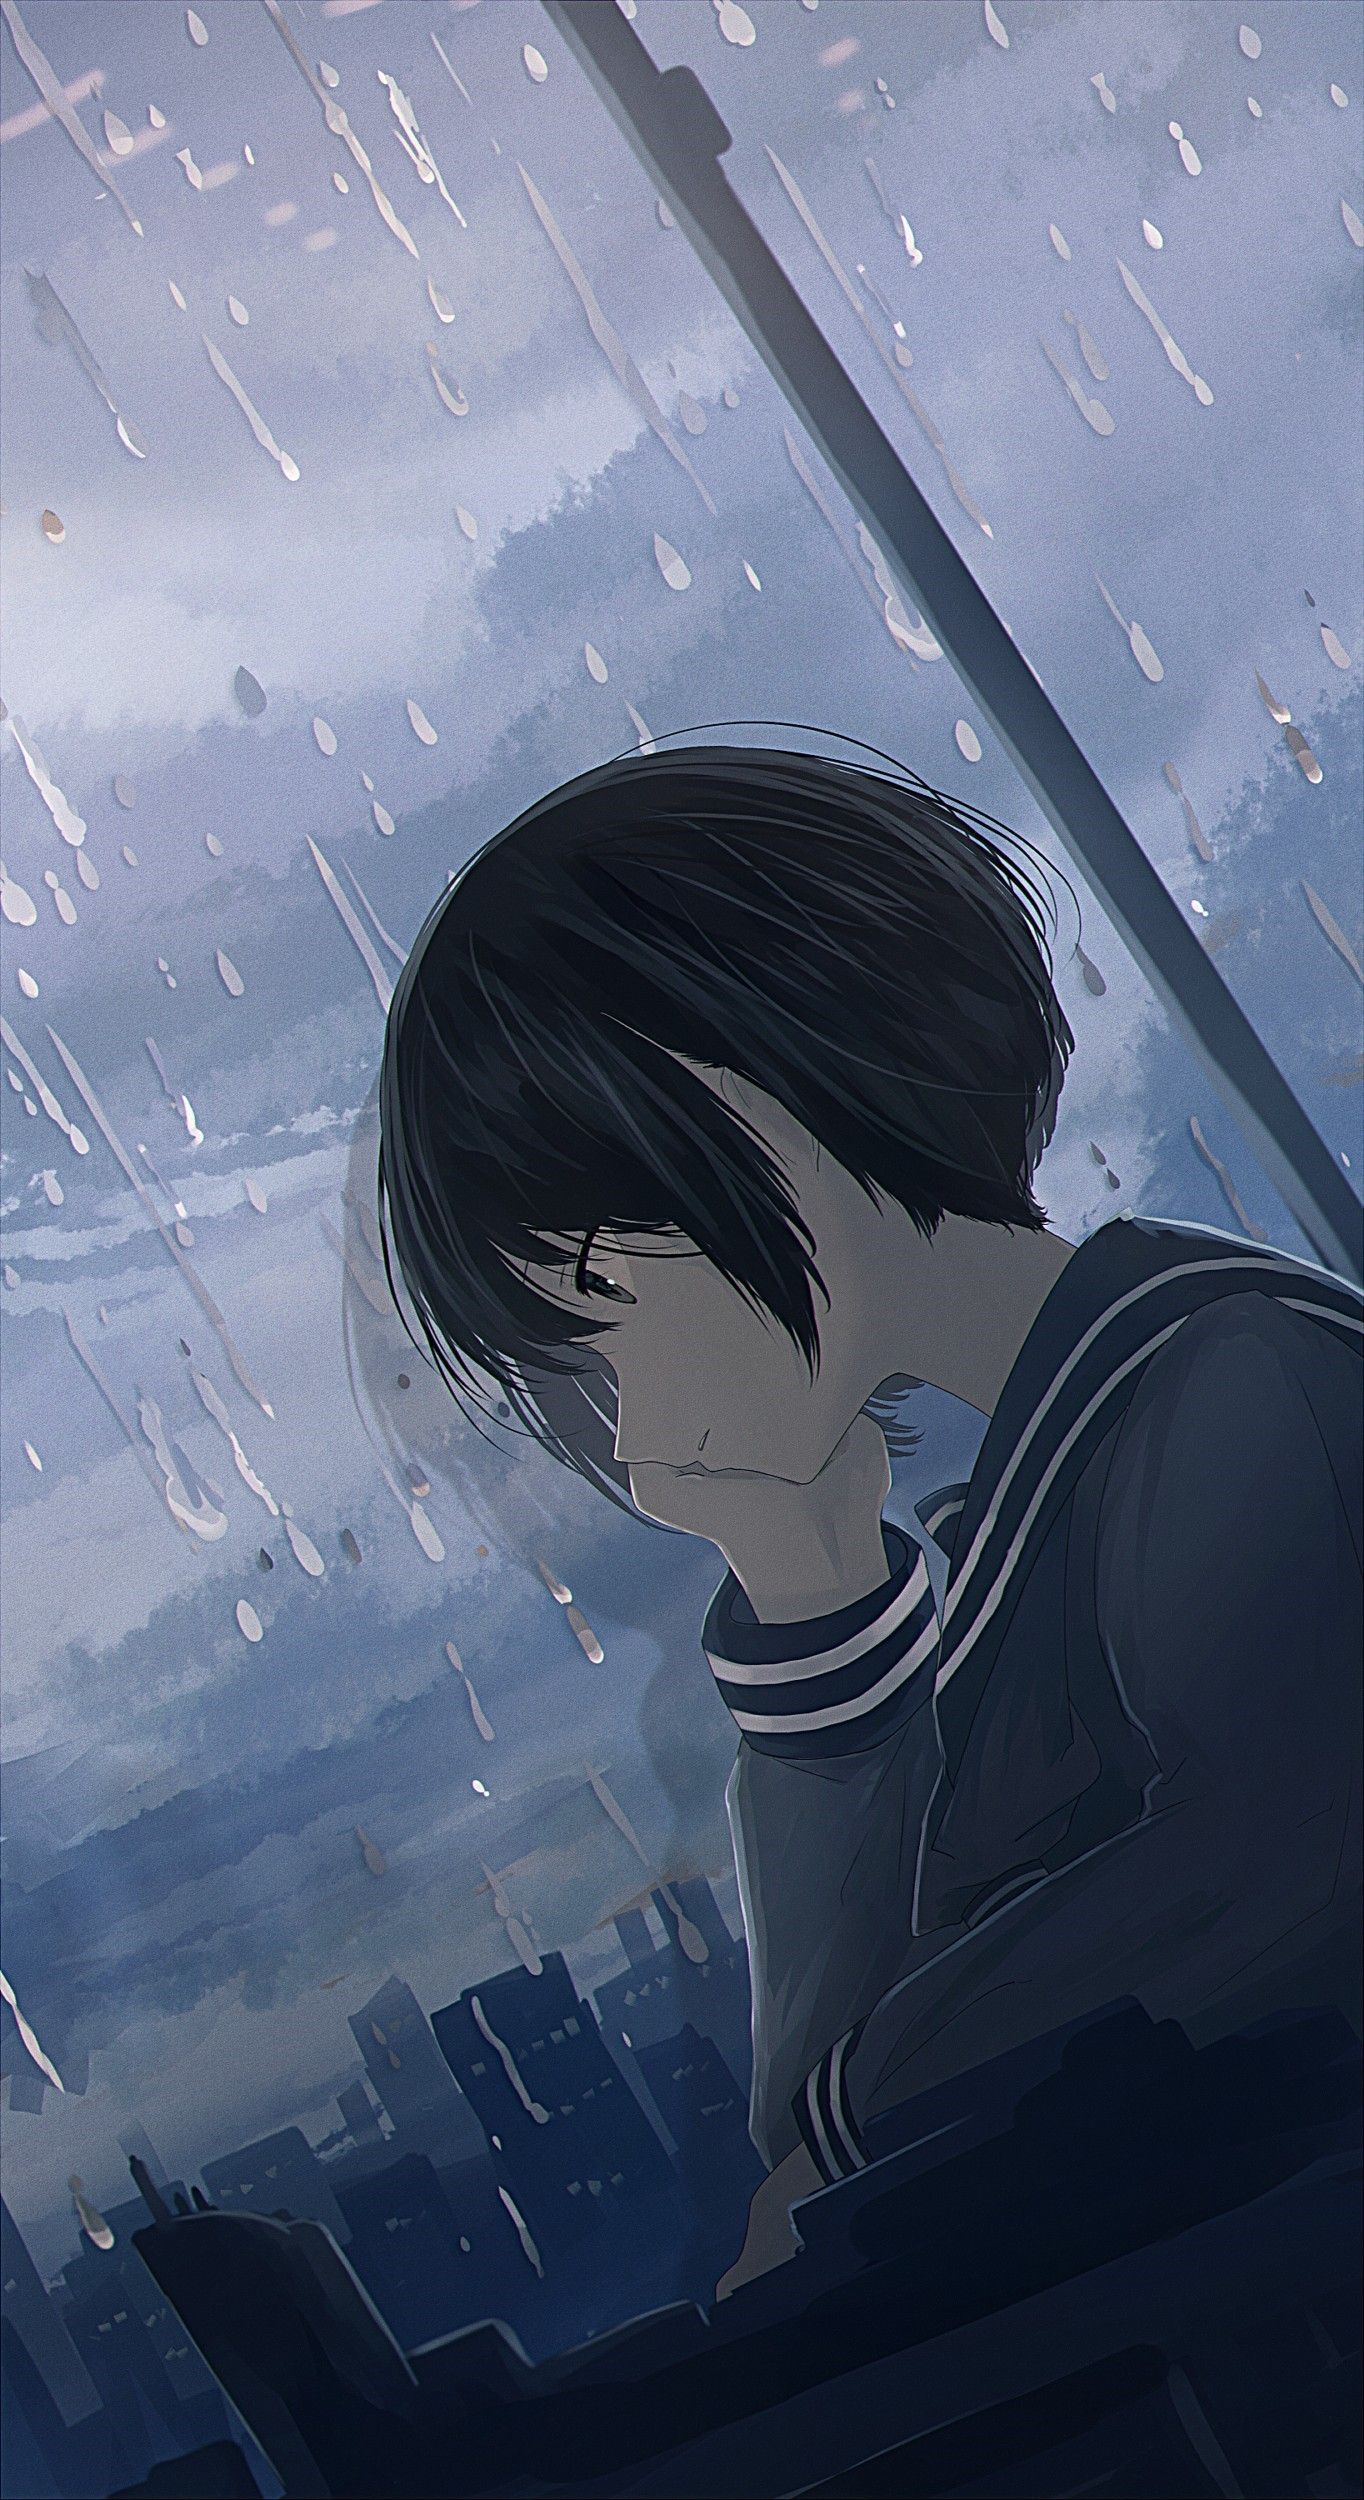 Một bức tranh anime đơn độc trong mưa